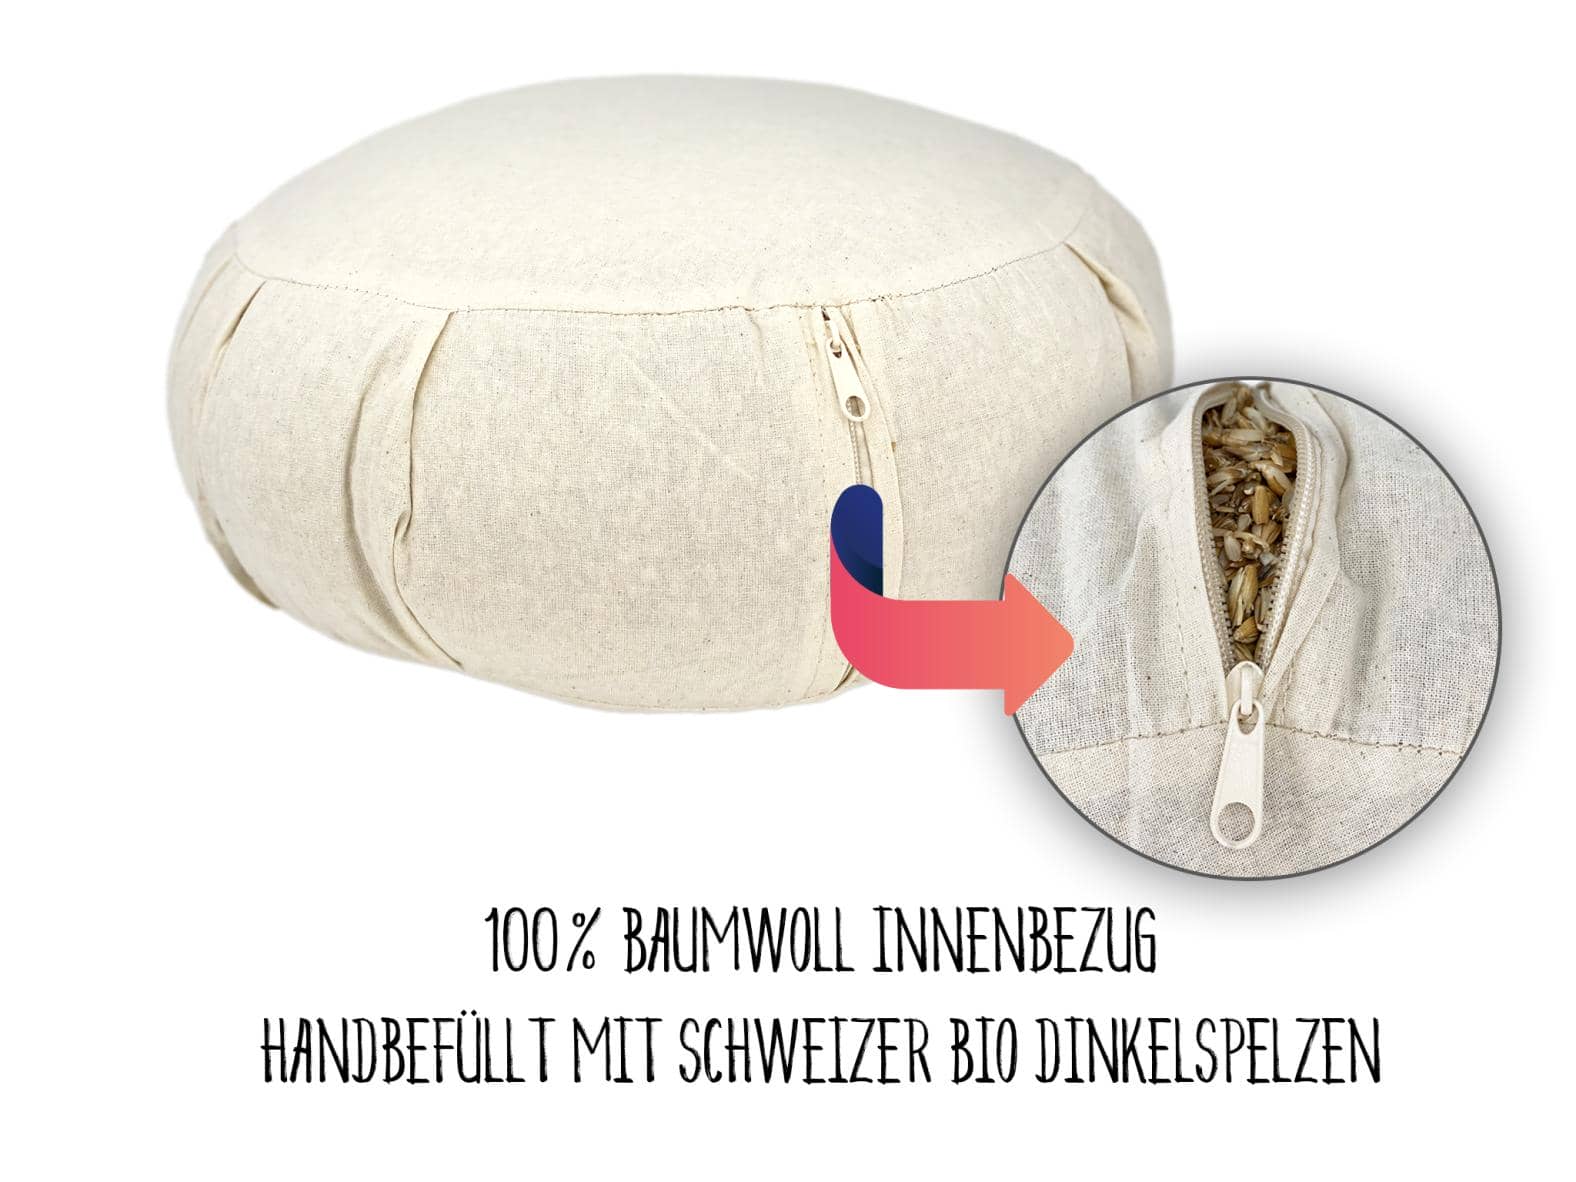 100% BaumWoll Innenbezug - Handbefüllt mit Schweizer BIO Dinkelspelzen